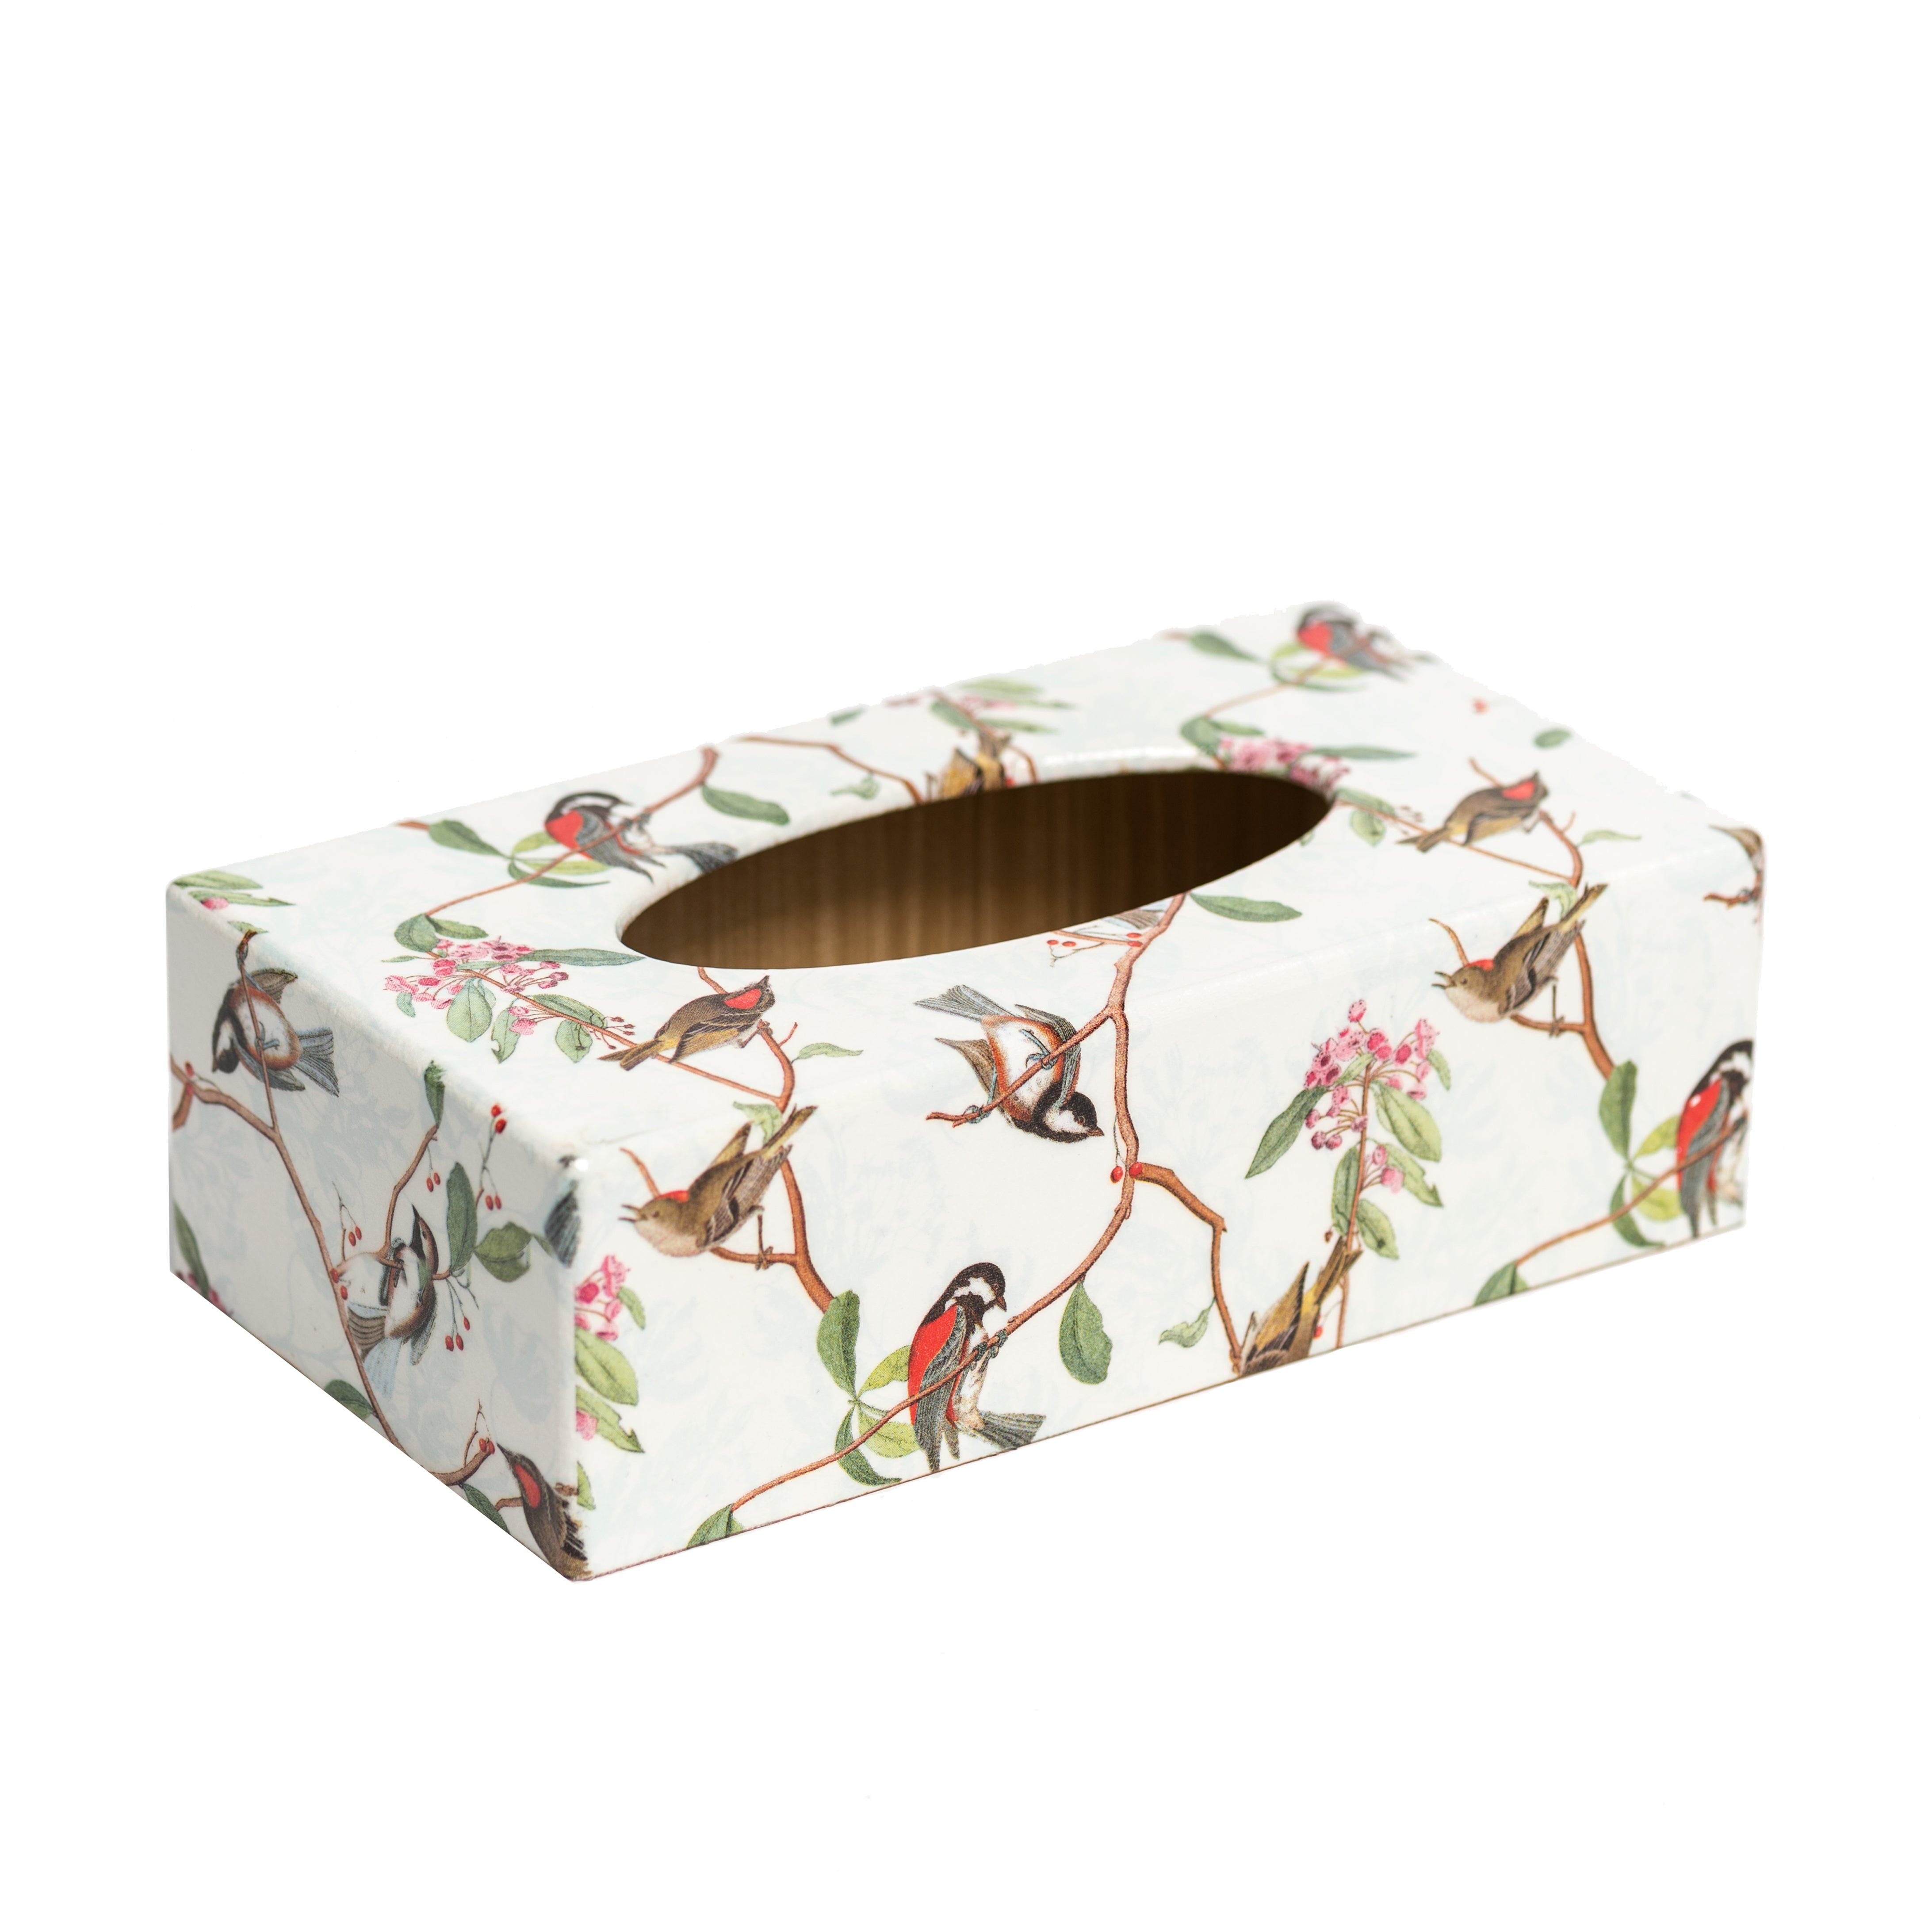 Birdsong Rectangular Tissue Box Cover - Handmade